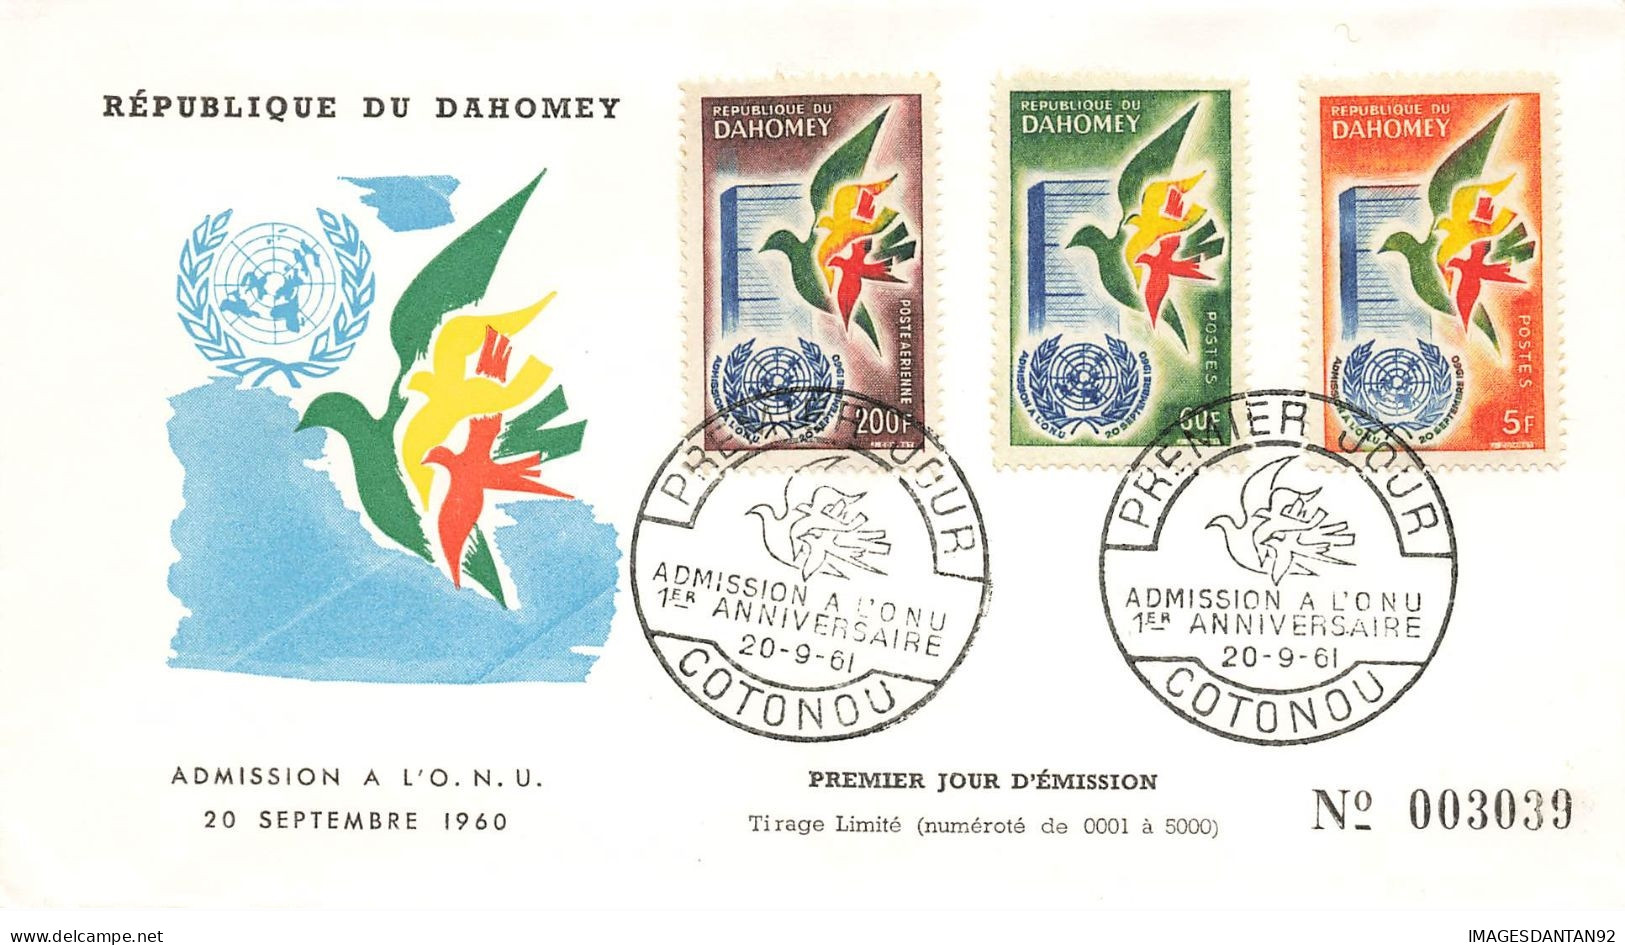 BENIN DAHOMEY #23699 COTONOU 1961 PREMIER JOUR ADMISSION A L ONU PA POSTE AERIENNE - Bénin – Dahomey (1960-...)